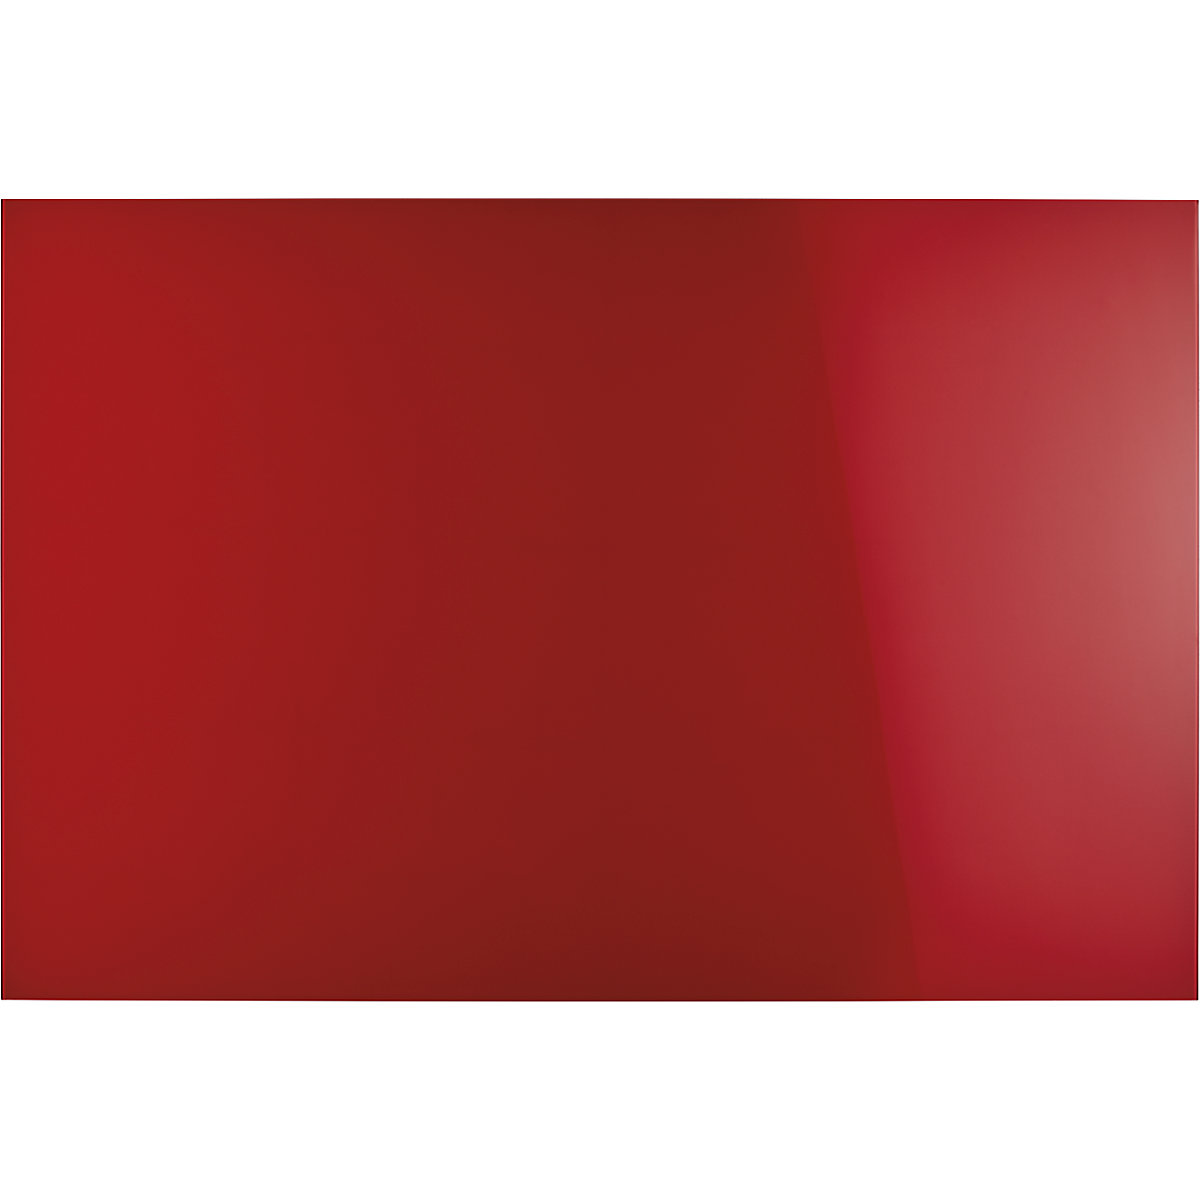 Elegantna steklena tabla, magnetna – magnetoplan, ŠxV 1500 x 1000 mm, intenzivno rdeče barve-8